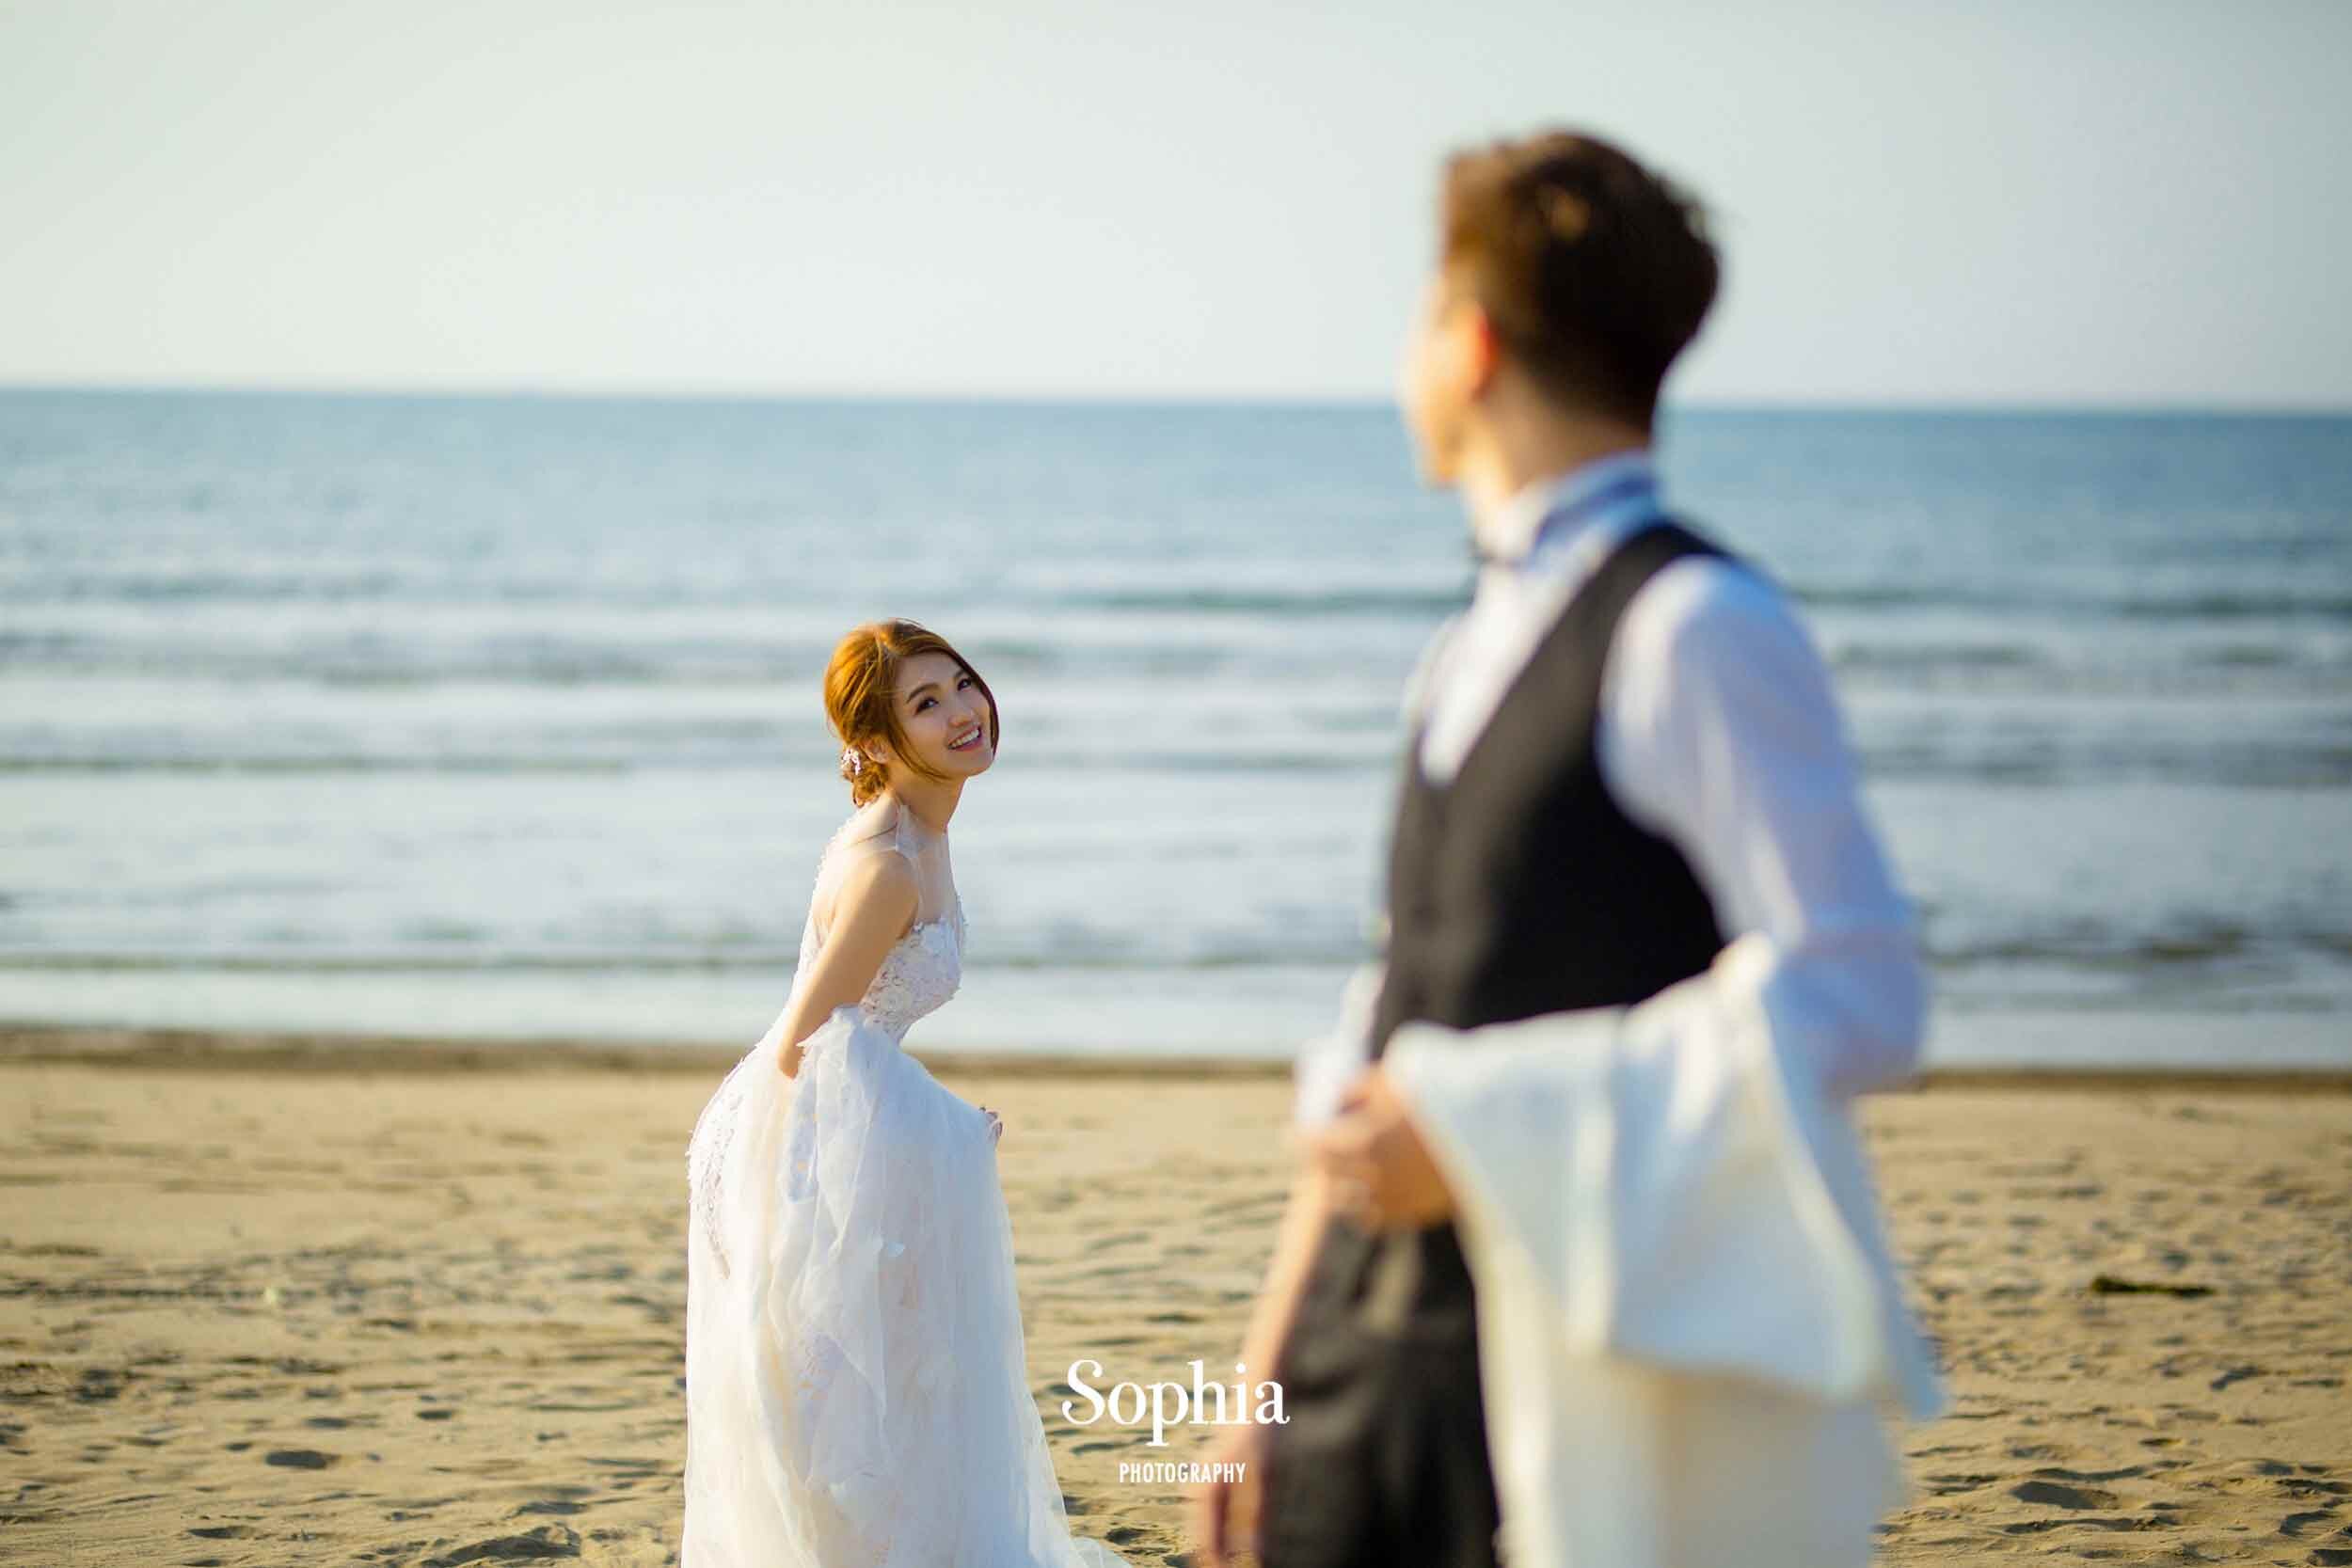  蘇菲雅婚紗-外景婚紗照-海邊-沙灘 